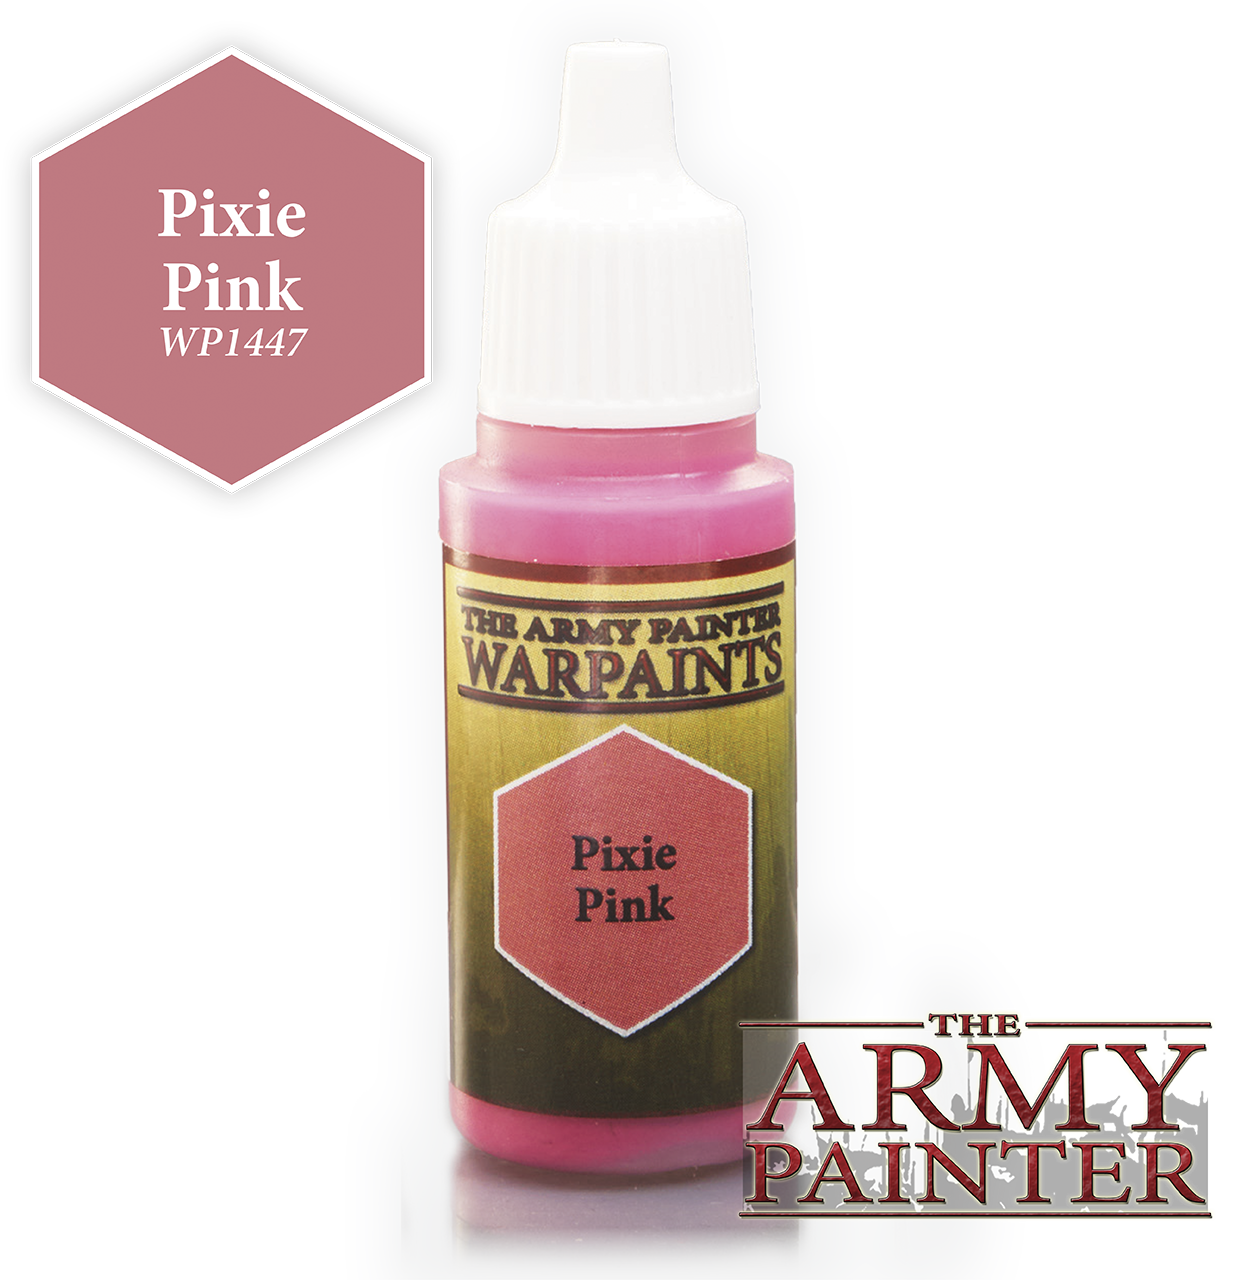 Pixie Pink - Army Painter Warpaints